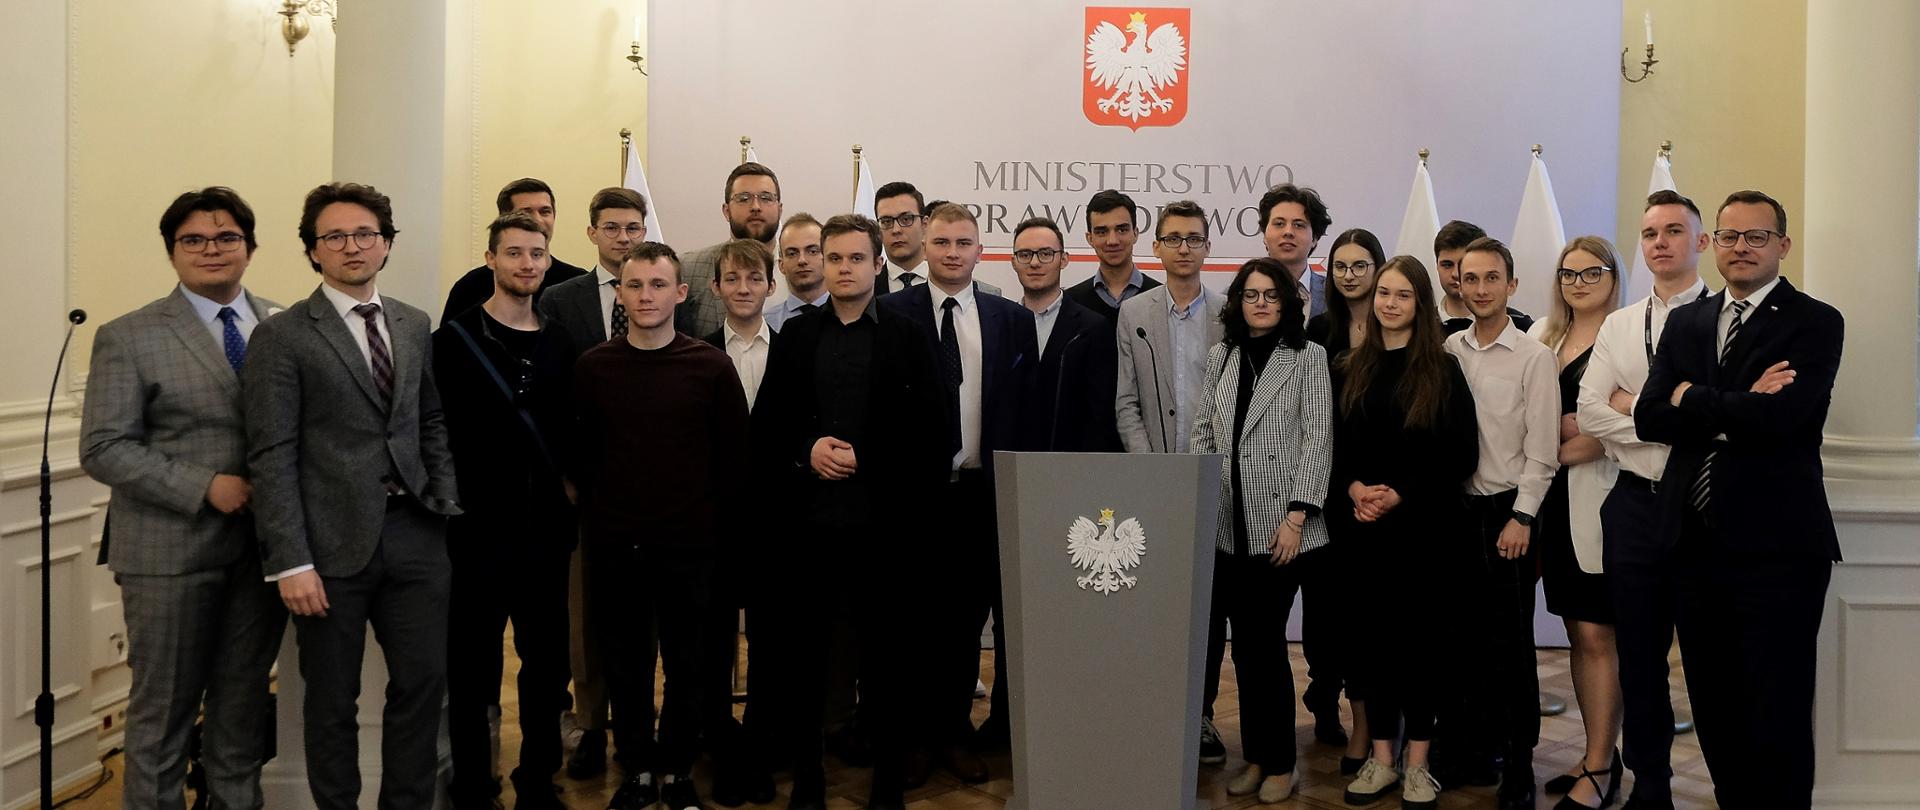 Spotkanie studentów z wiceministrem Marcinem Romanowskim